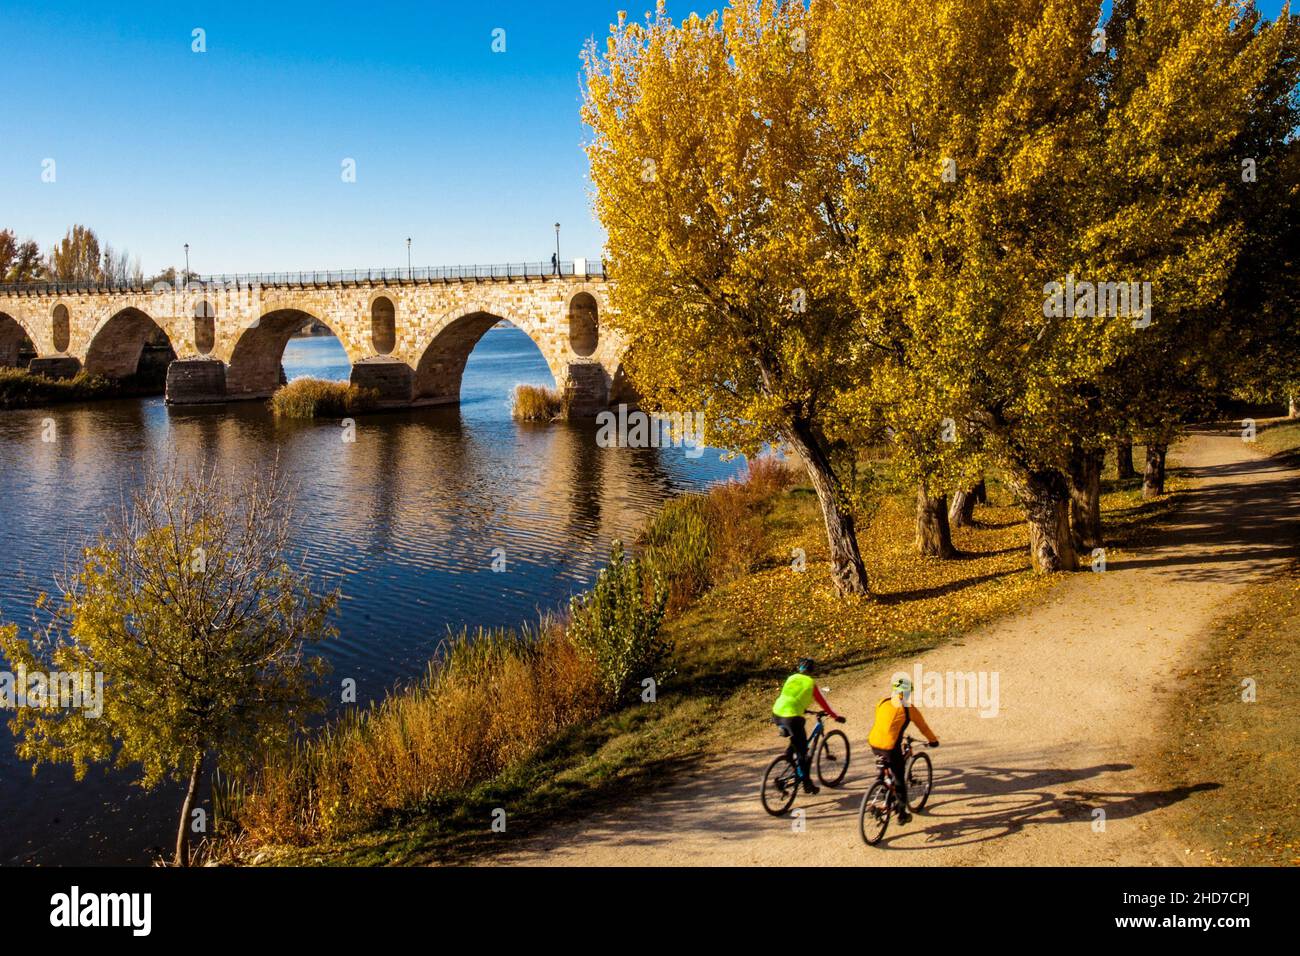 Puente de piedra, Duero Zamora, Zamora Provience, Castilla y León, España, Europa. Foto de stock